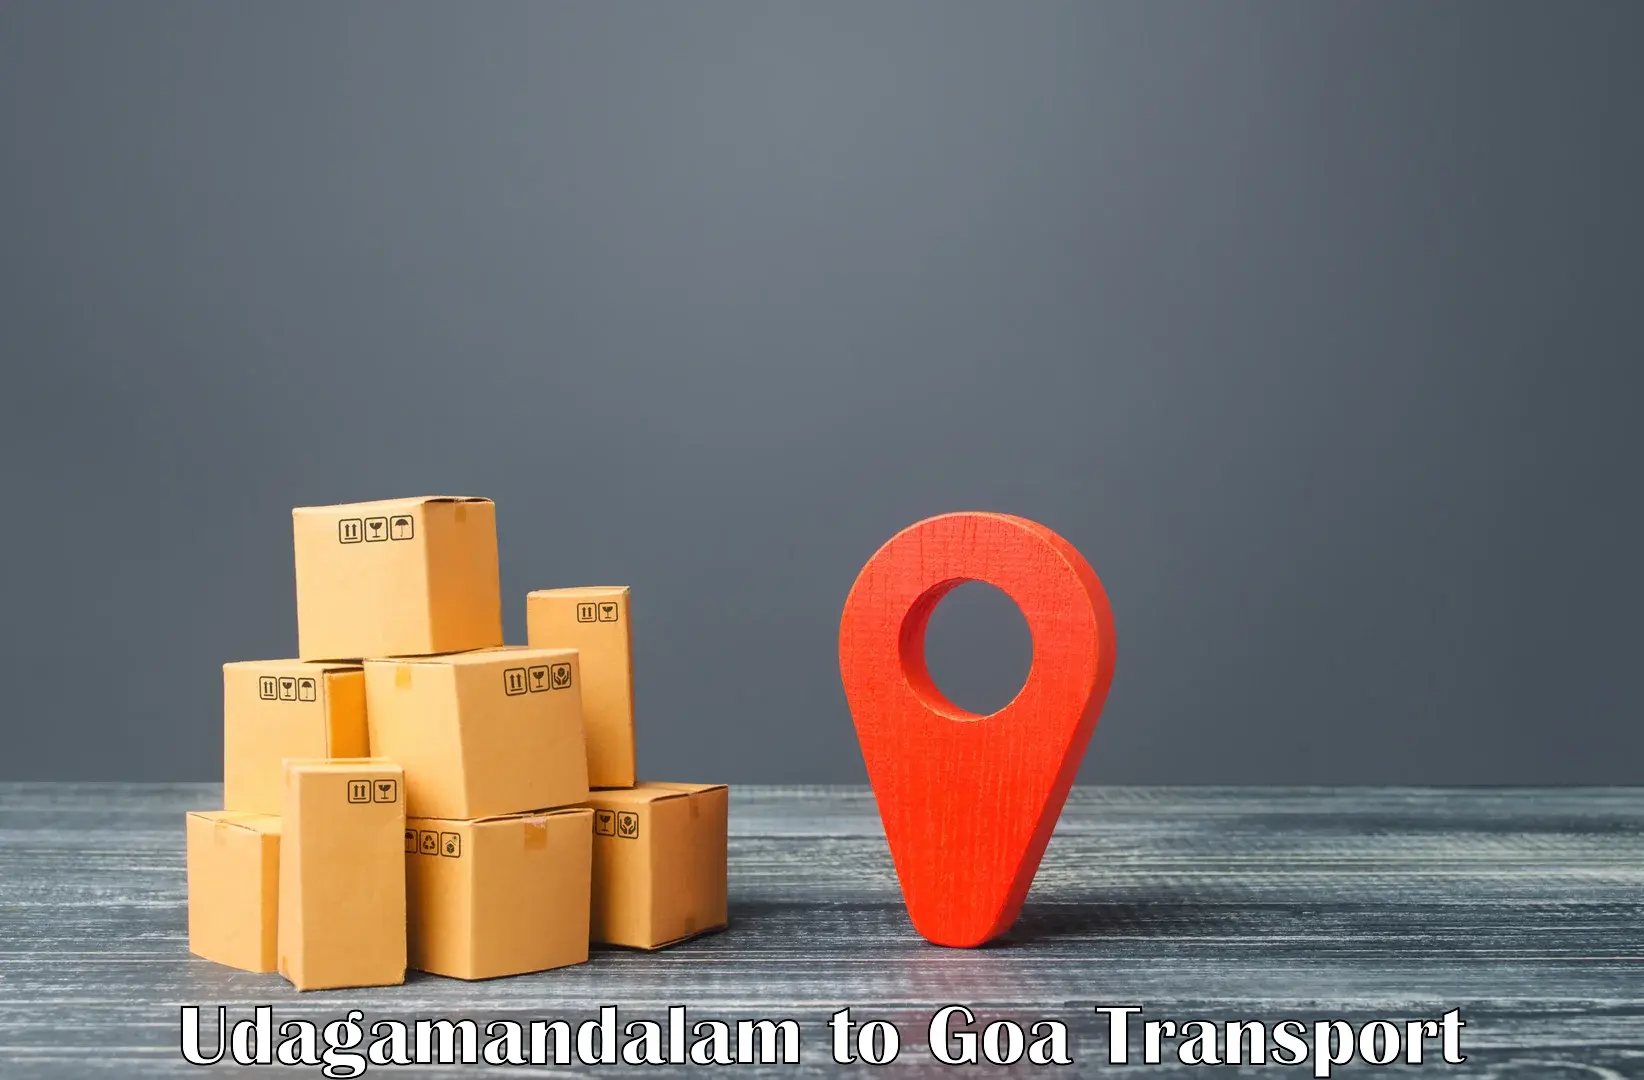 Daily transport service Udagamandalam to IIT Goa